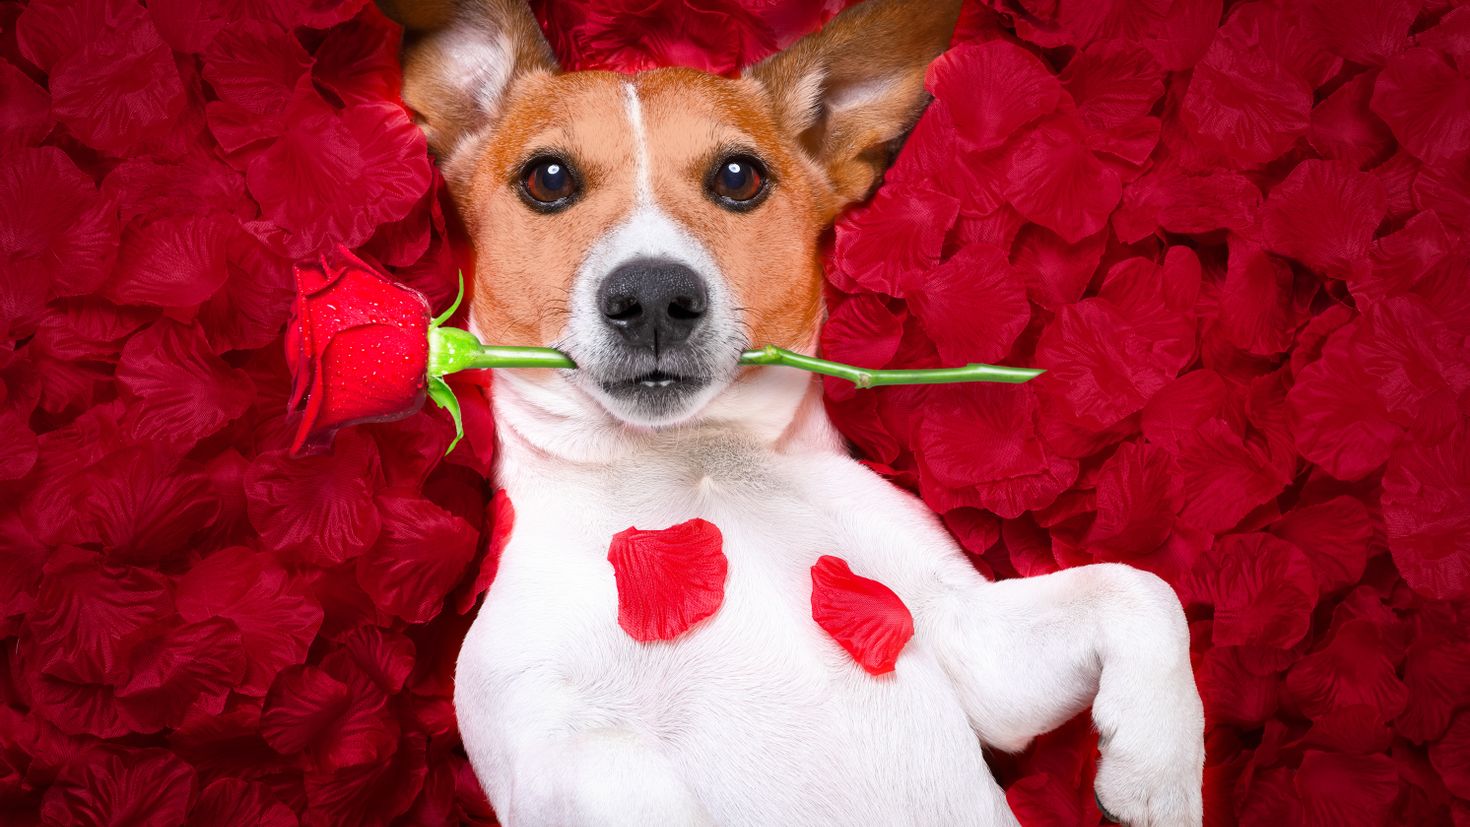 Фото собака с цветком в зубах